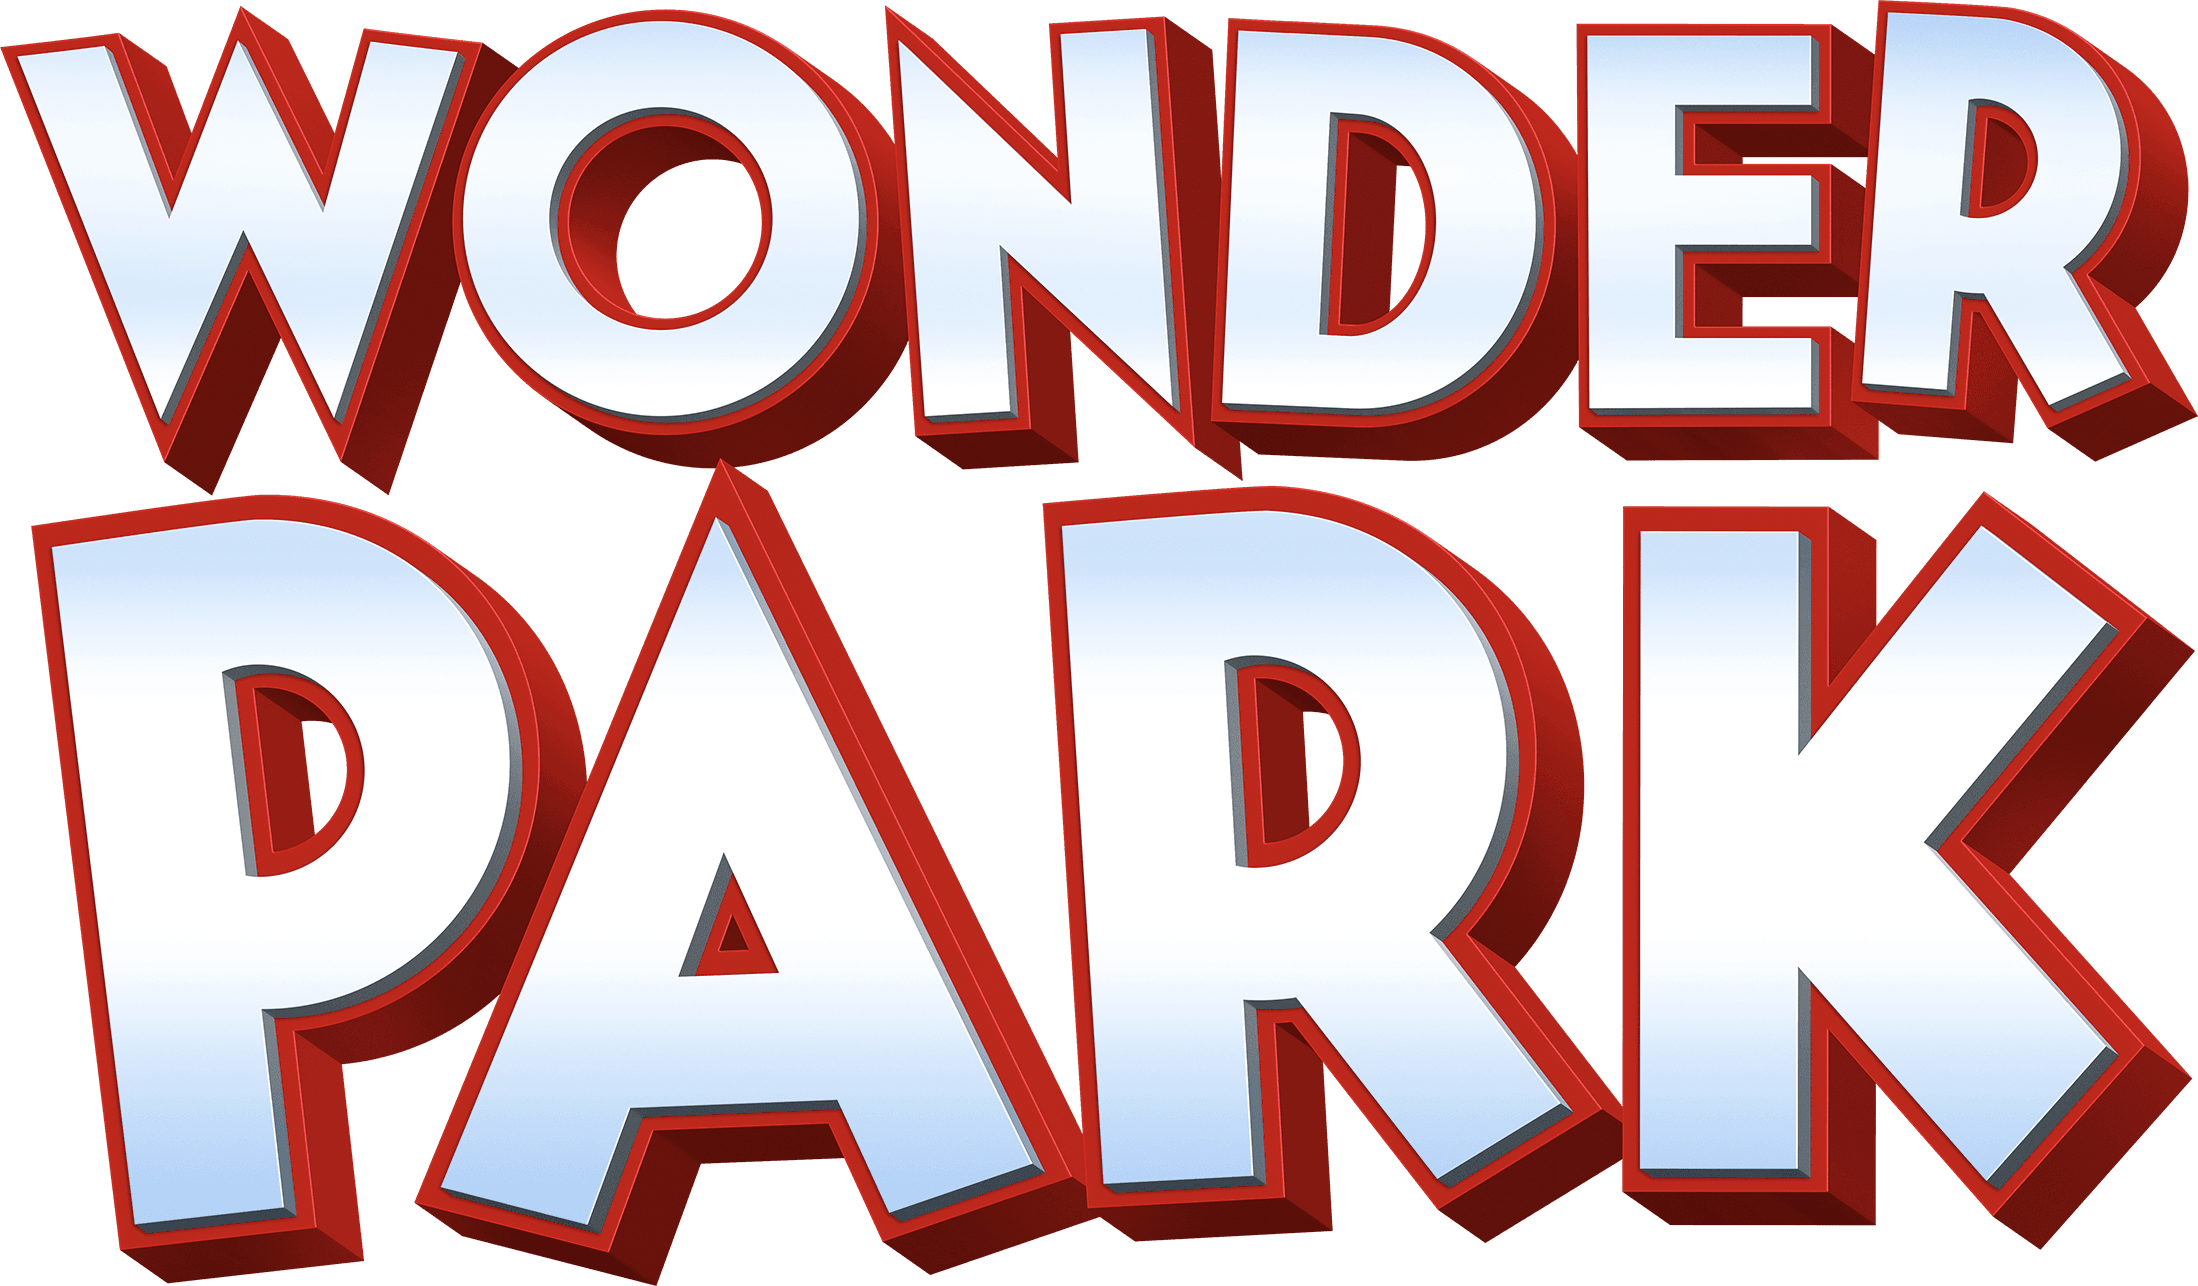 Wonder Park logo